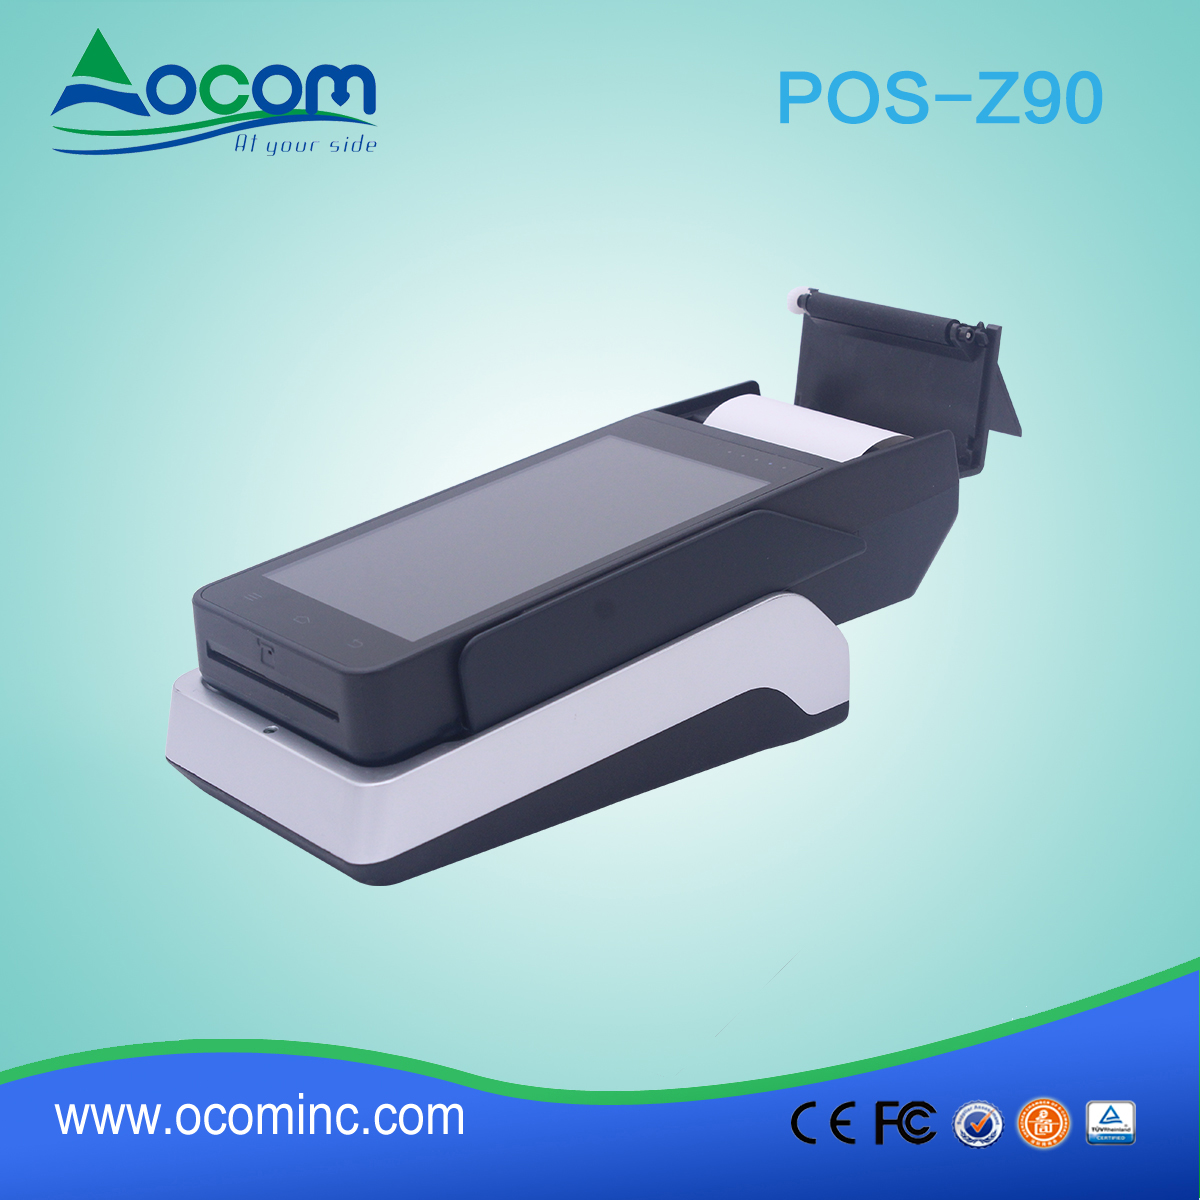 OCOM POS-Z90 tudo em um terminal handheld android pos com impressora e leitor nfc